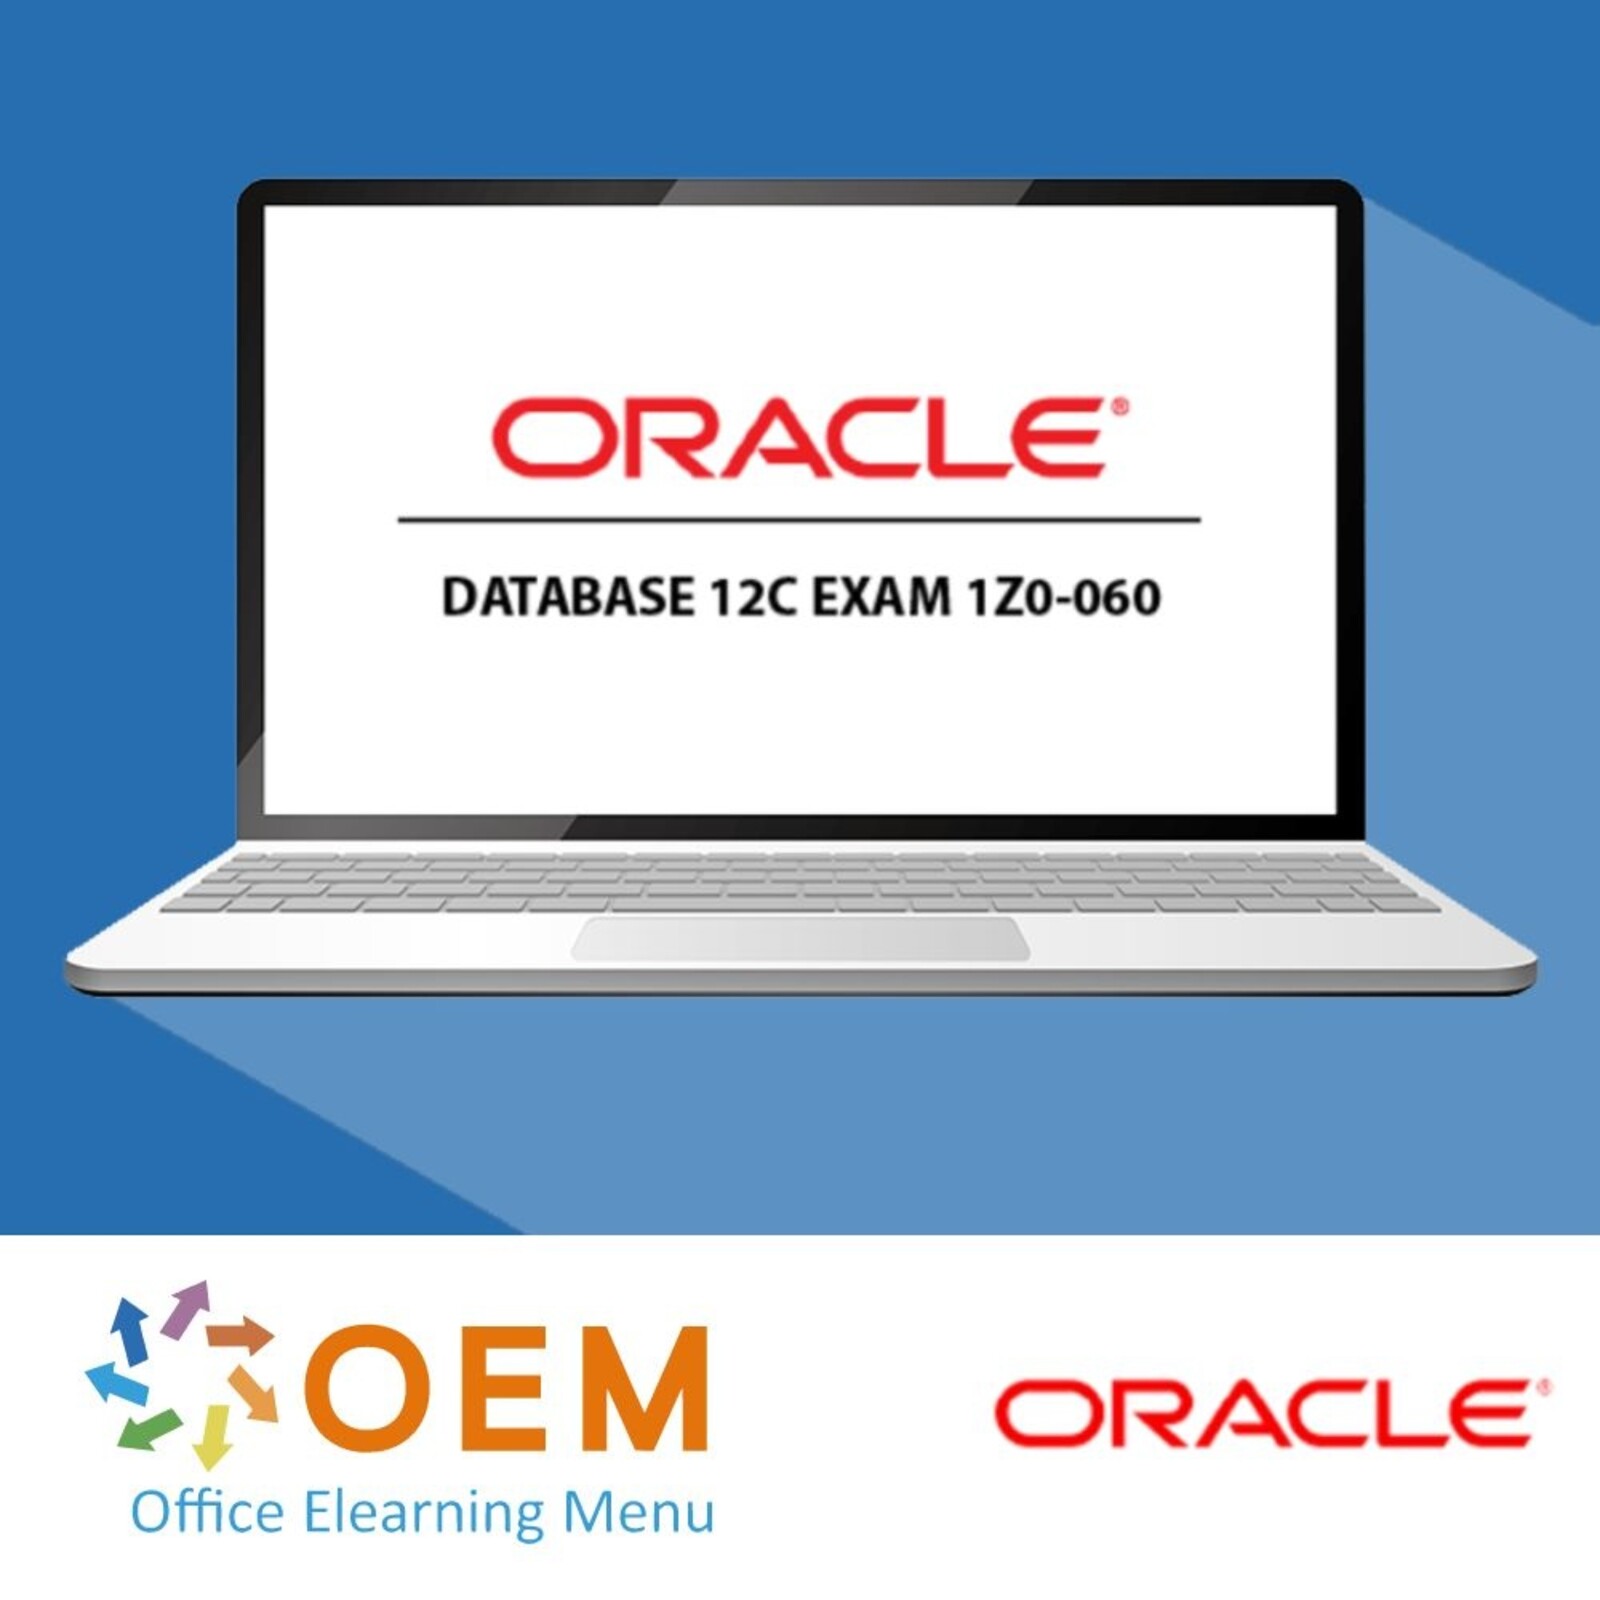 Oracle Corporation Oracle Database 12c exam 1Z0-060 Training